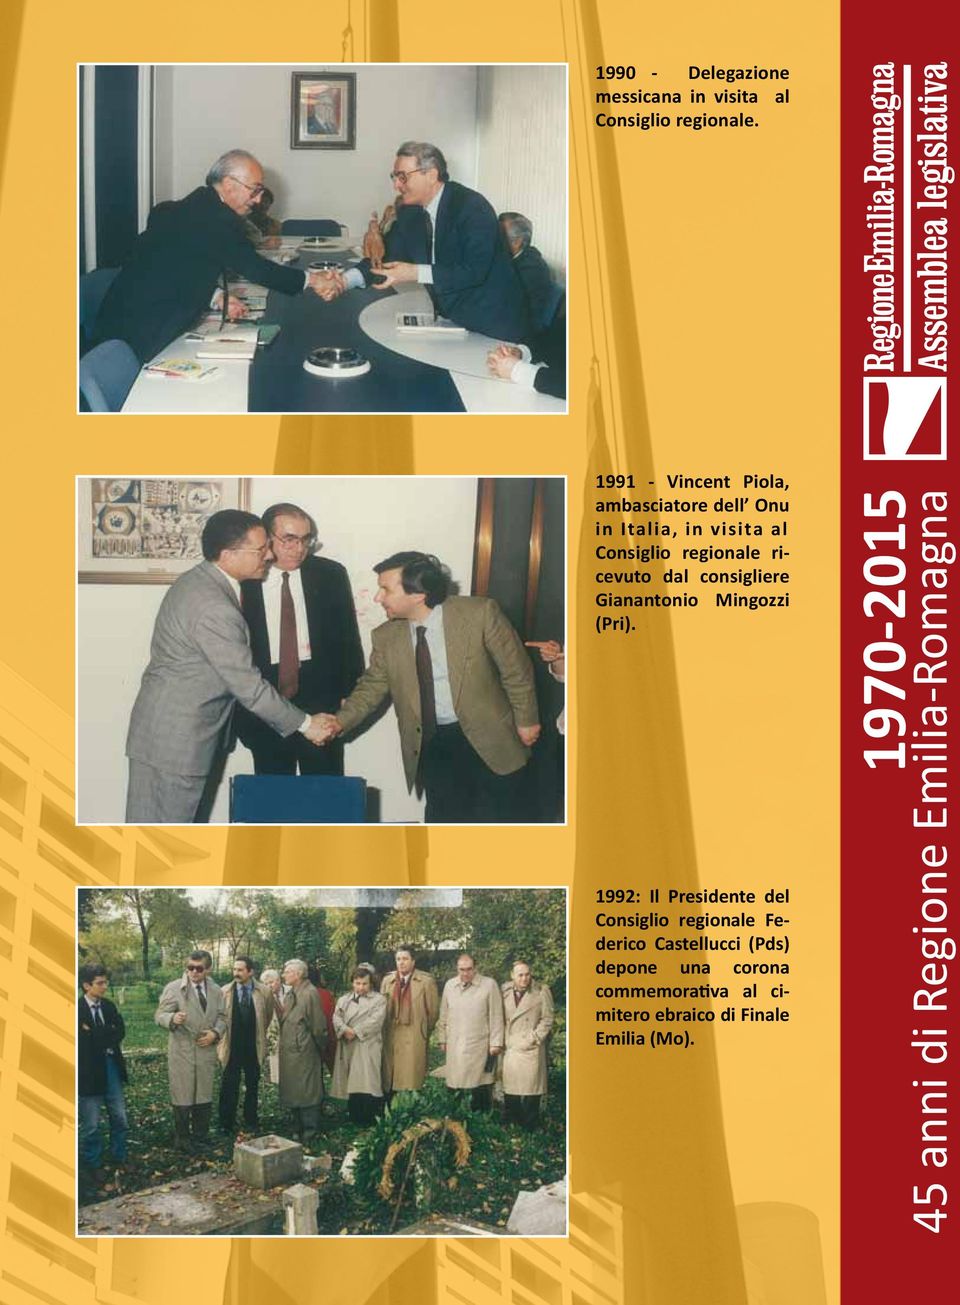 1991 - Vincent Piola, ambasciatore dell Onu in Italia, in visita al Consiglio regionale